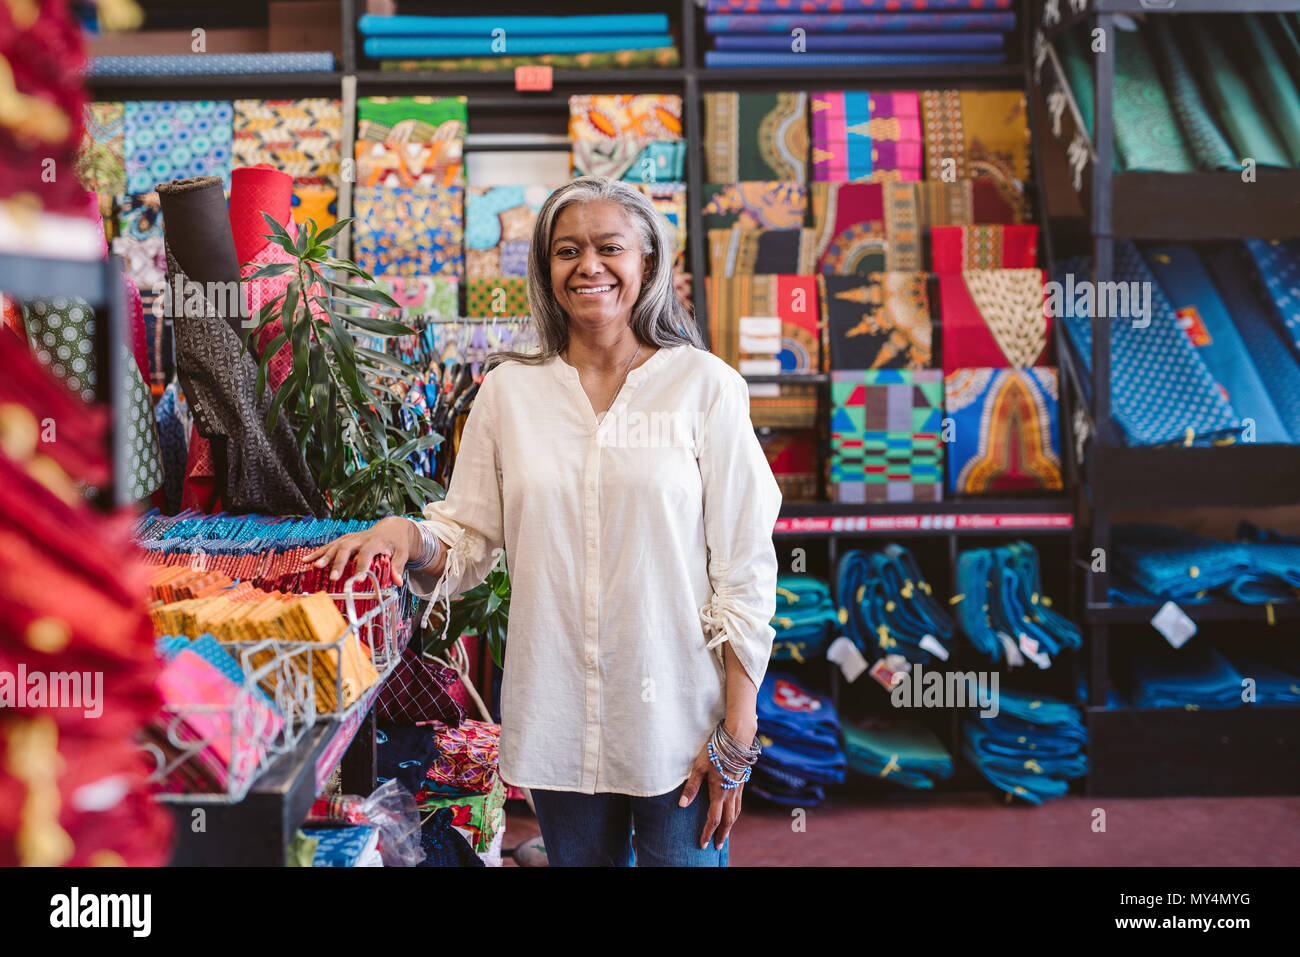 Porträt eines lächelnden reife Stoff shop besitzer stehen Racks und Regale voll von bunten Tüchern und Textilien Stockfoto